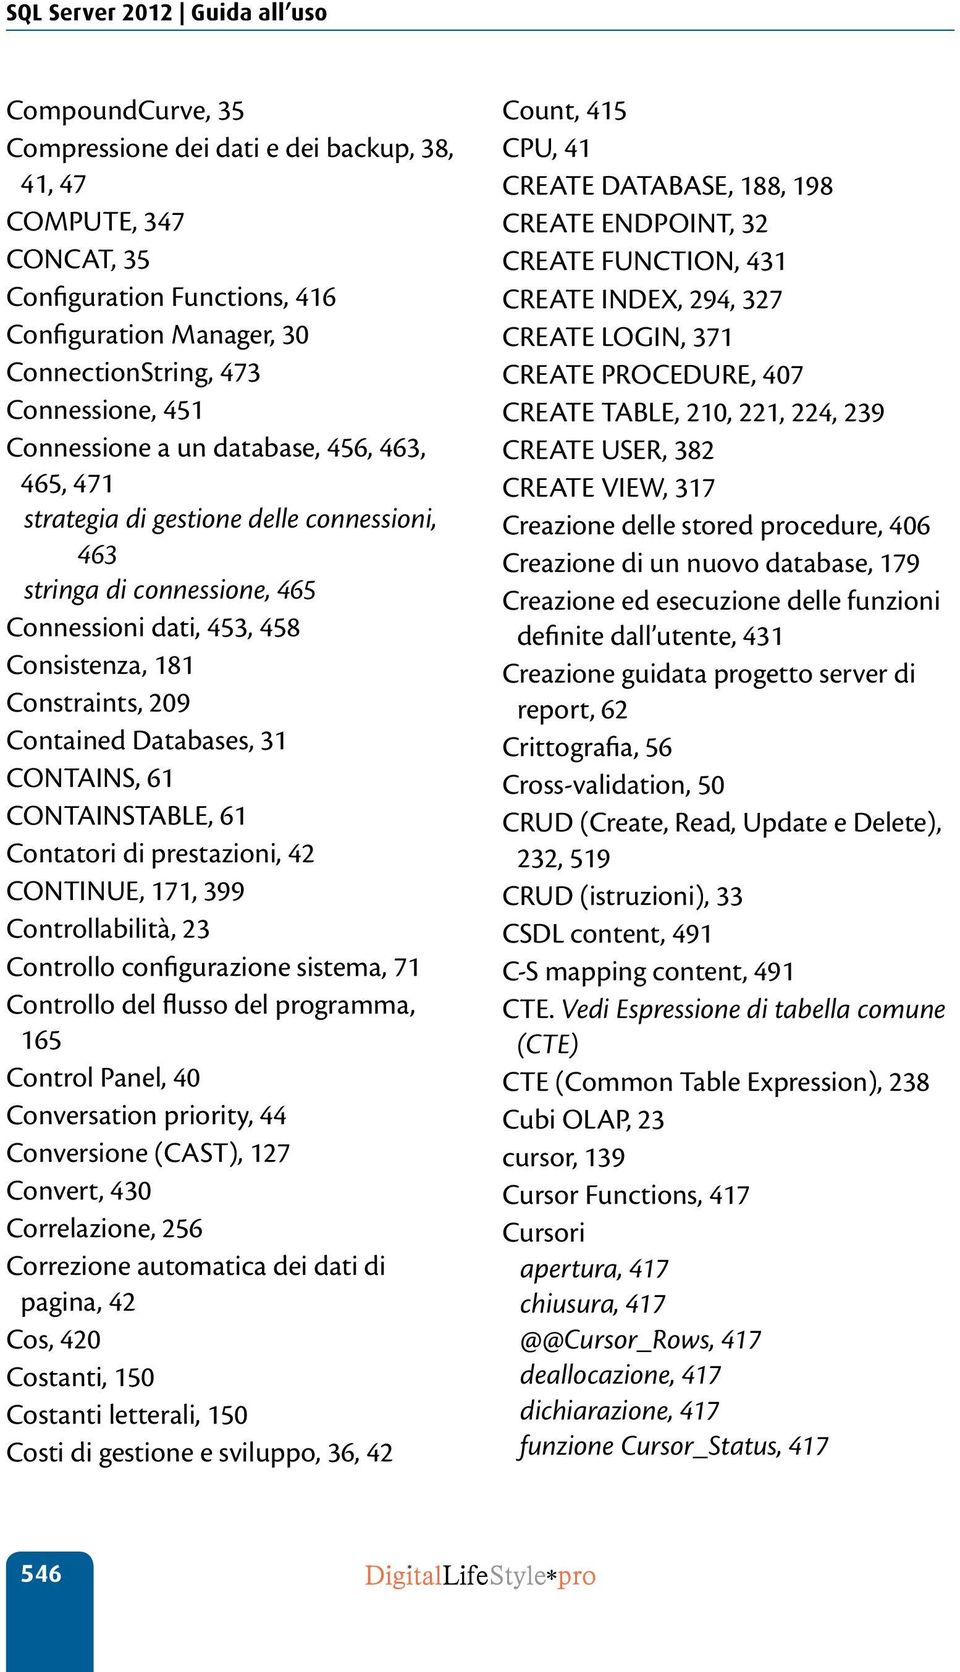 Contained Databases, 31 CONTAINS, 61 CONTAINSTABLE, 61 Contatori di prestazioni, 42 CONTINUE, 171, 399 Controllabilità, 23 Controllo configurazione sistema, 71 Controllo del flusso del programma, 165